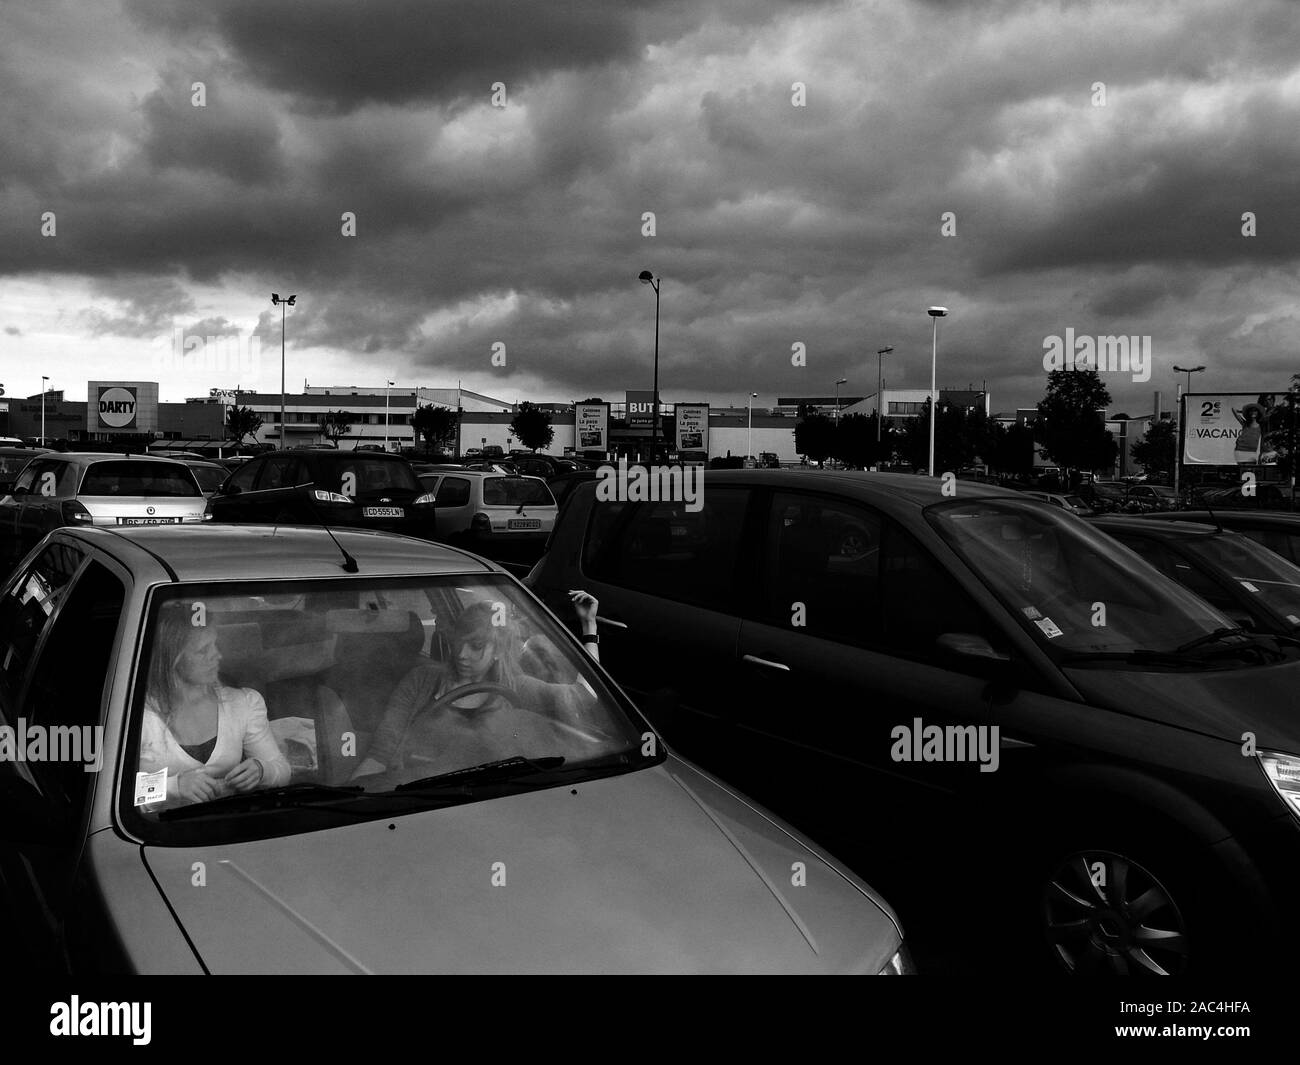 AJAXNETPHOTO. Amiens, Frankreich. - Regen Wolken - zwei Menschen, die IM GESPRÄCH IN EINEM AUTO IN EINE AUSSERHALB DER STADT GELEGENES RETAIL PARKPLATZ. Foto: Jonathan Eastland/AJAX REF: GR 121506_BW 3638 Stockfoto